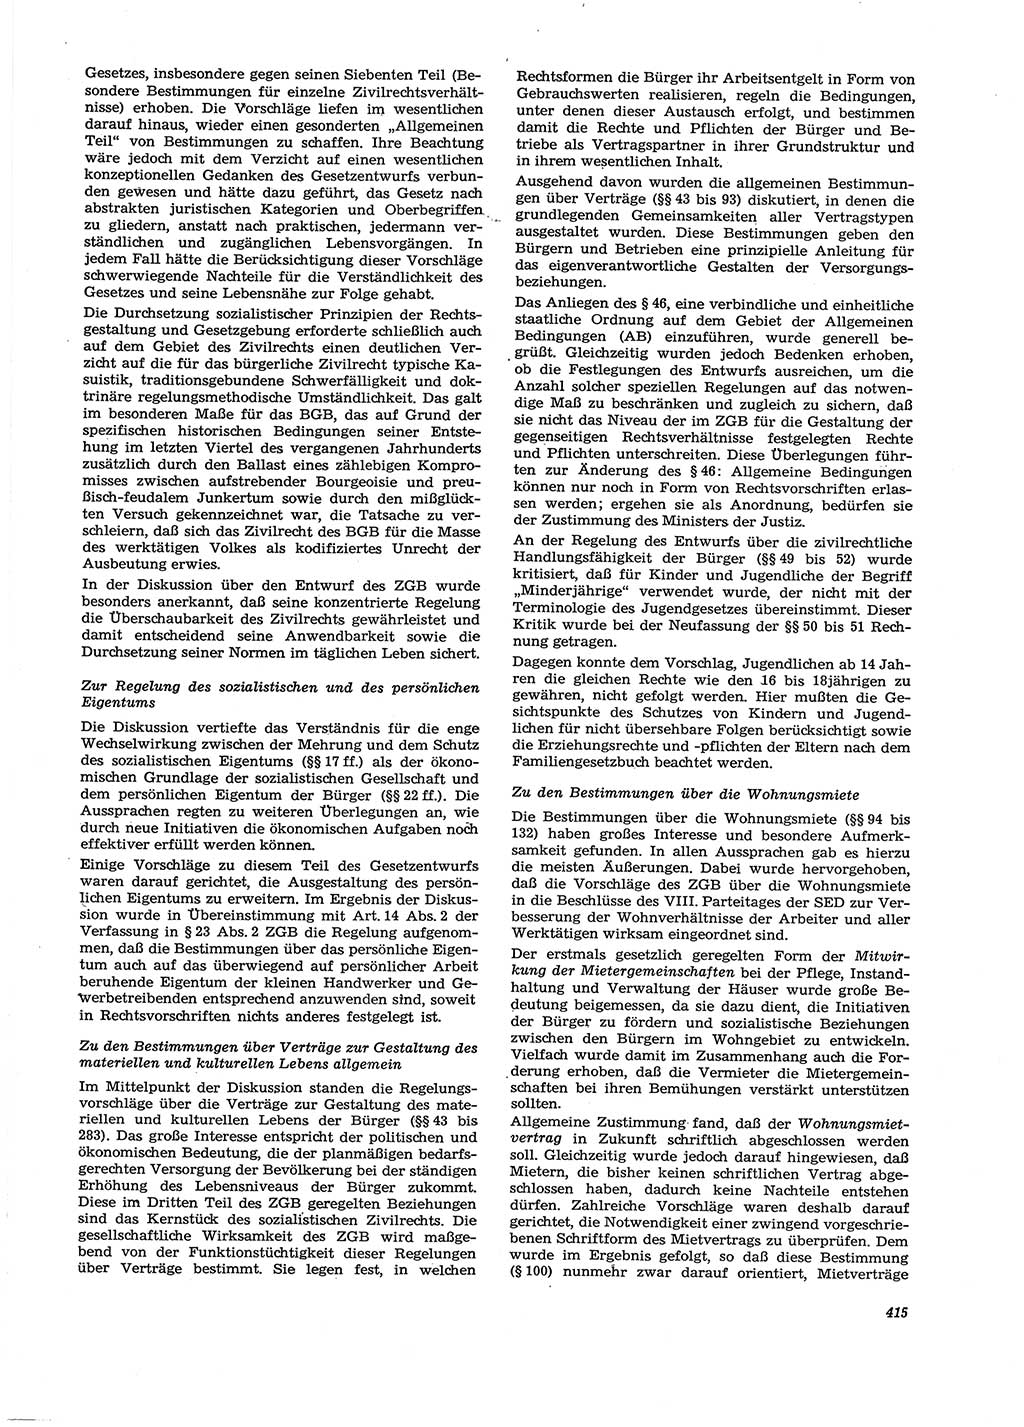 Neue Justiz (NJ), Zeitschrift für Recht und Rechtswissenschaft [Deutsche Demokratische Republik (DDR)], 29. Jahrgang 1975, Seite 415 (NJ DDR 1975, S. 415)